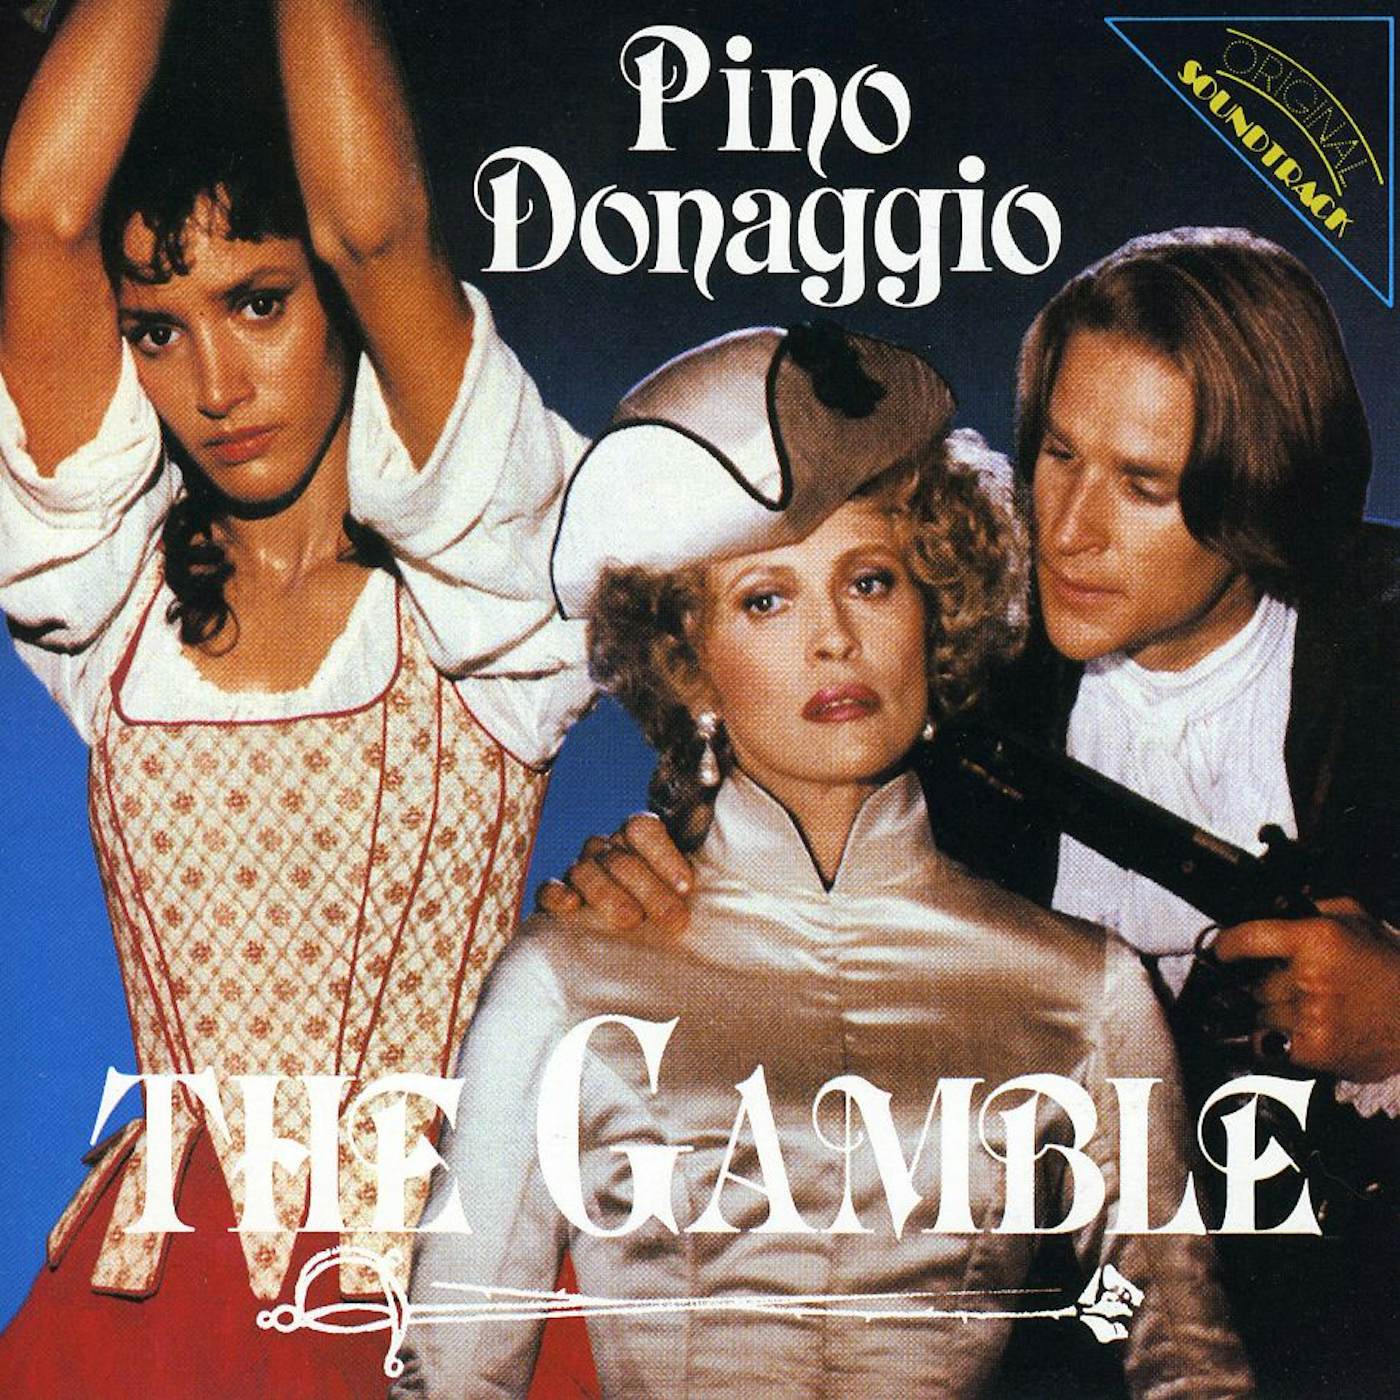 Pino Donaggio LA PARTITA CD